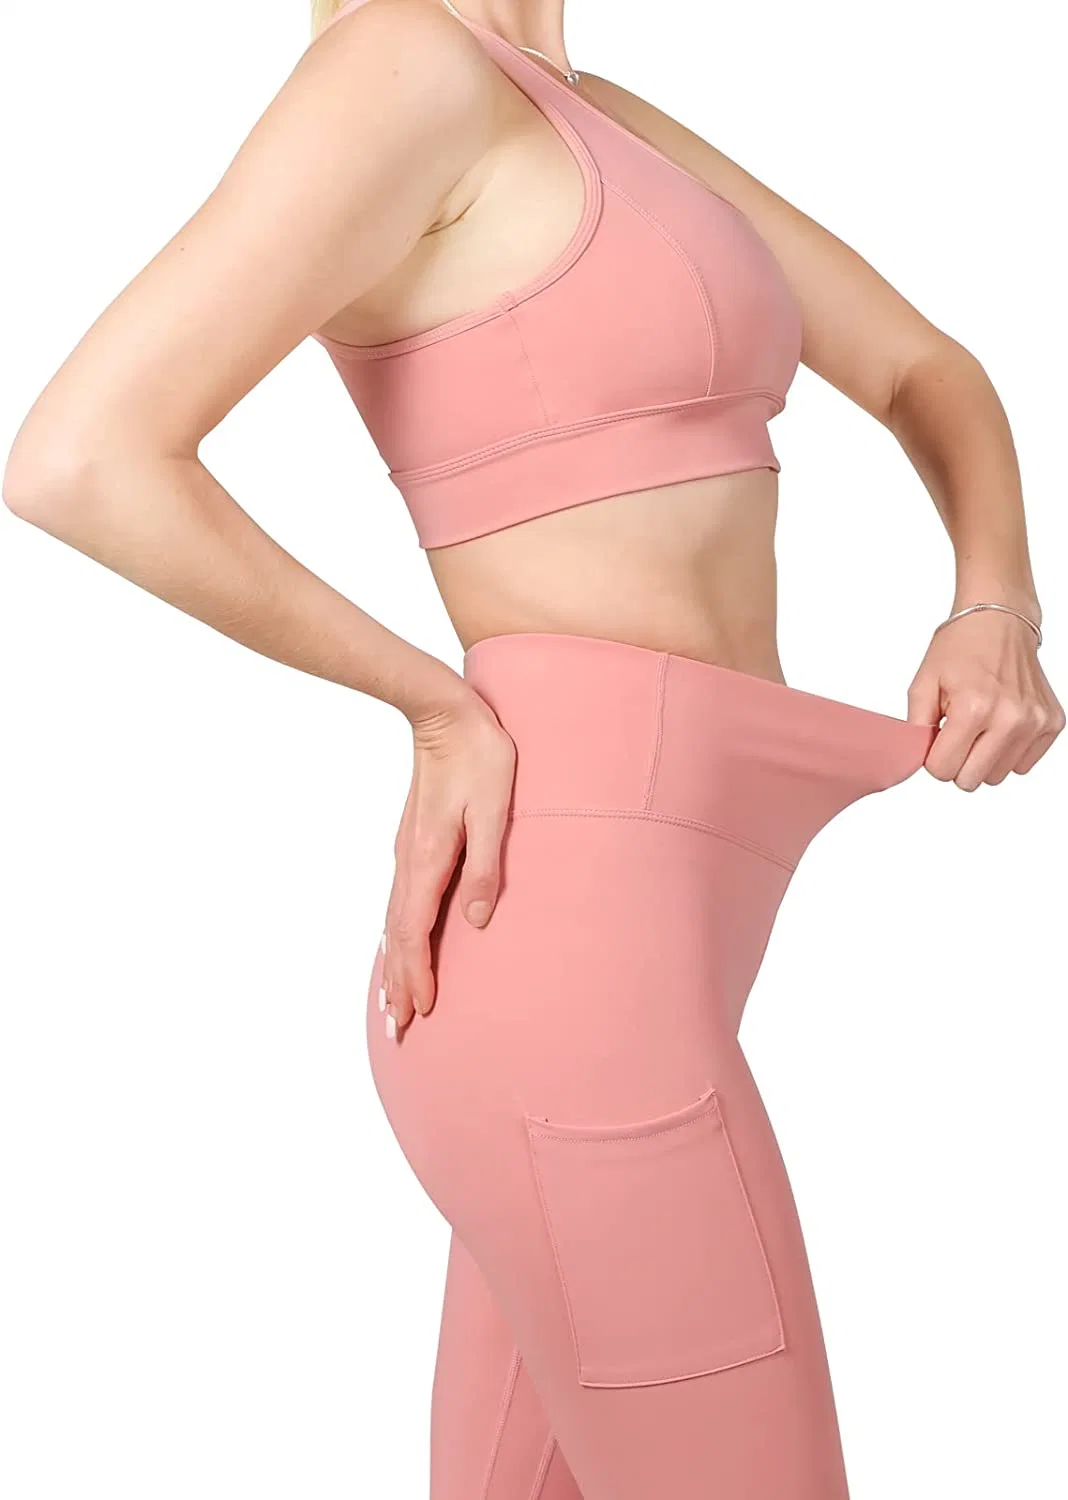 Fitness Gym Wear Yoga Bekleidung Sportswear 2 PCS Set für Frau